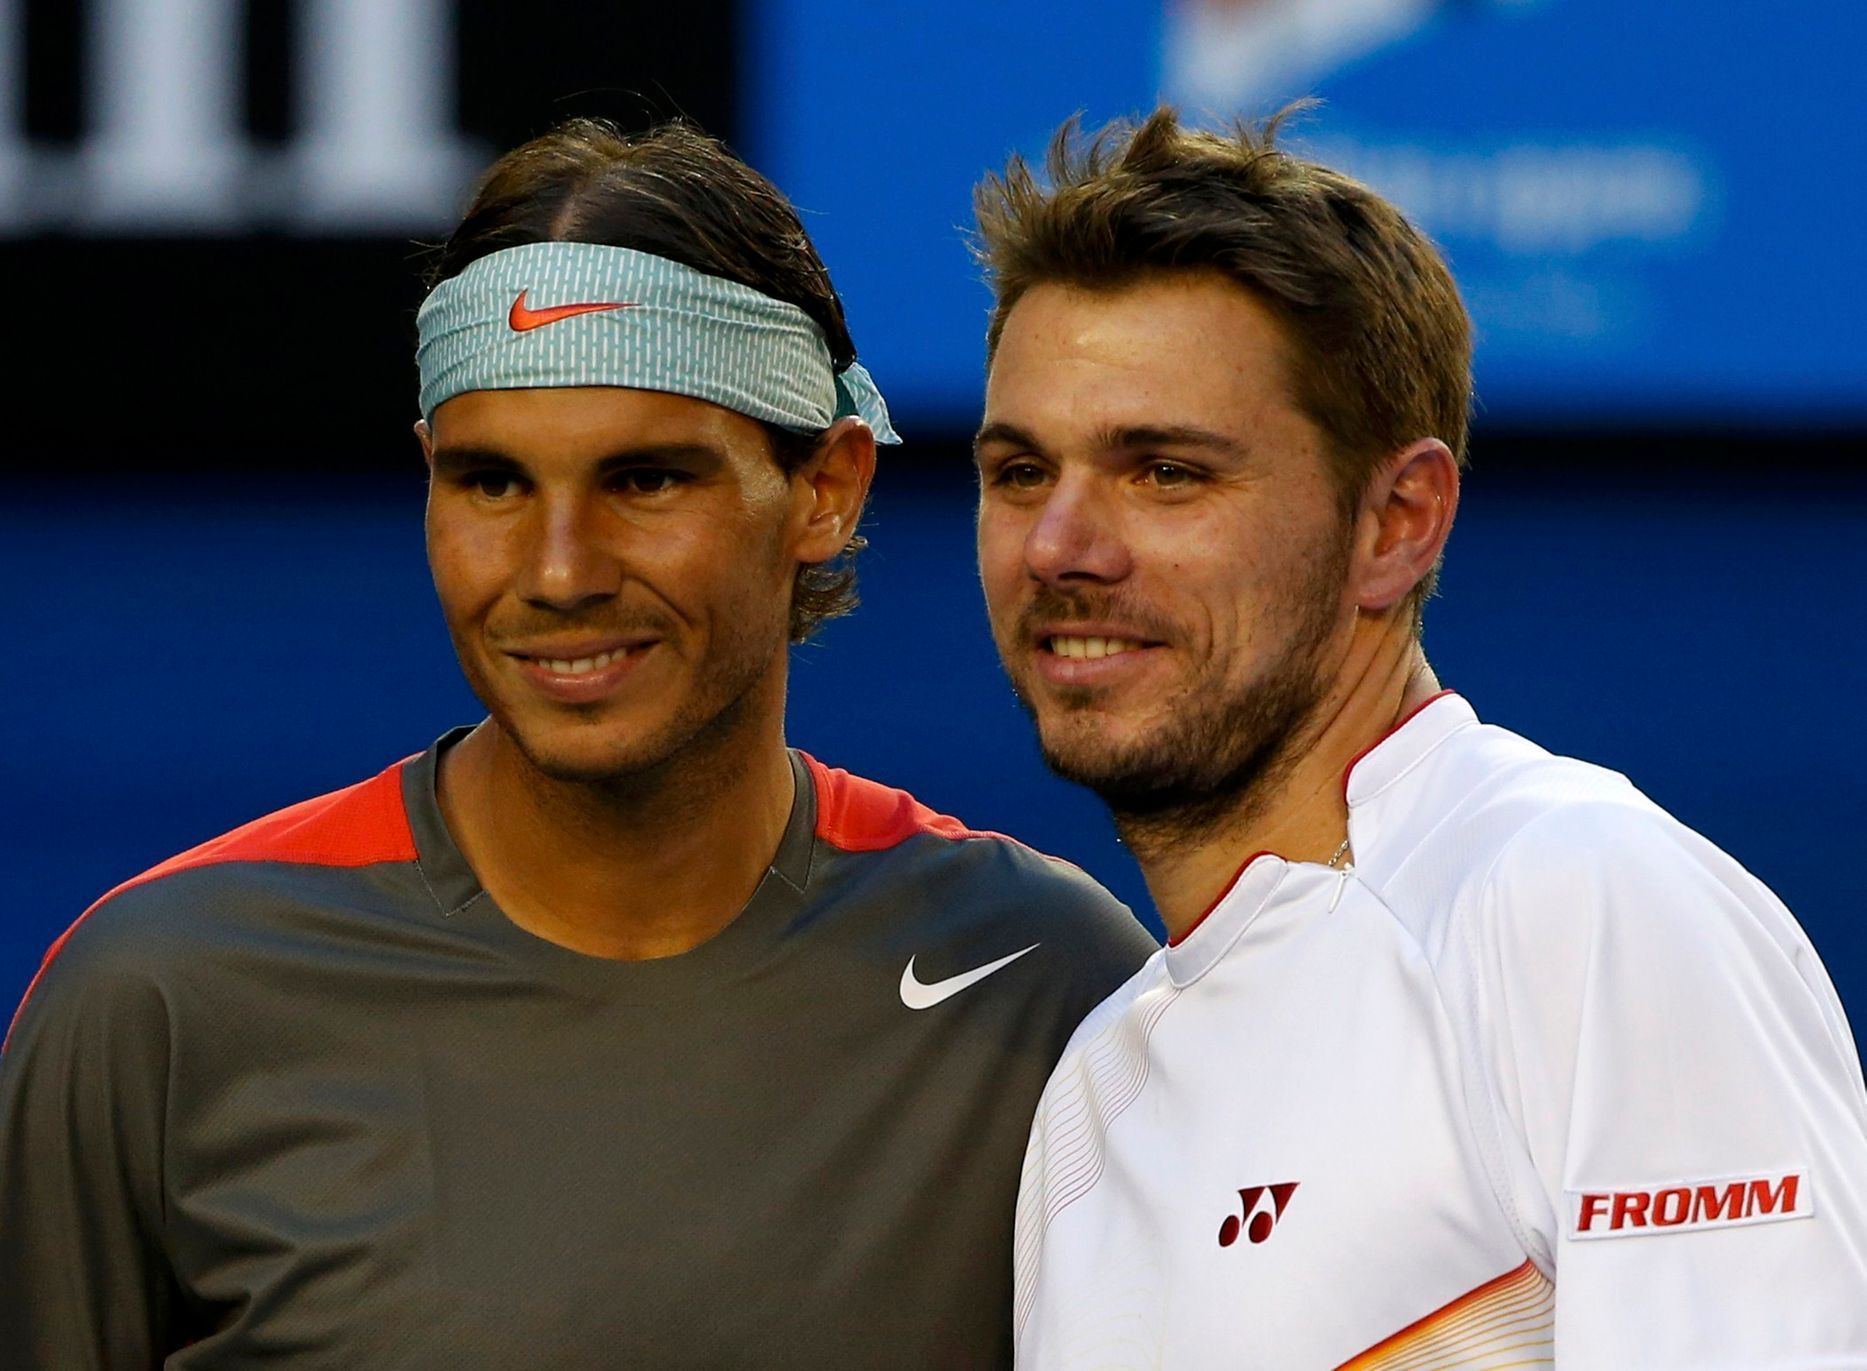 Finále Australian Open: Nadal - Wawrinka (Nadal, Wawrinka)